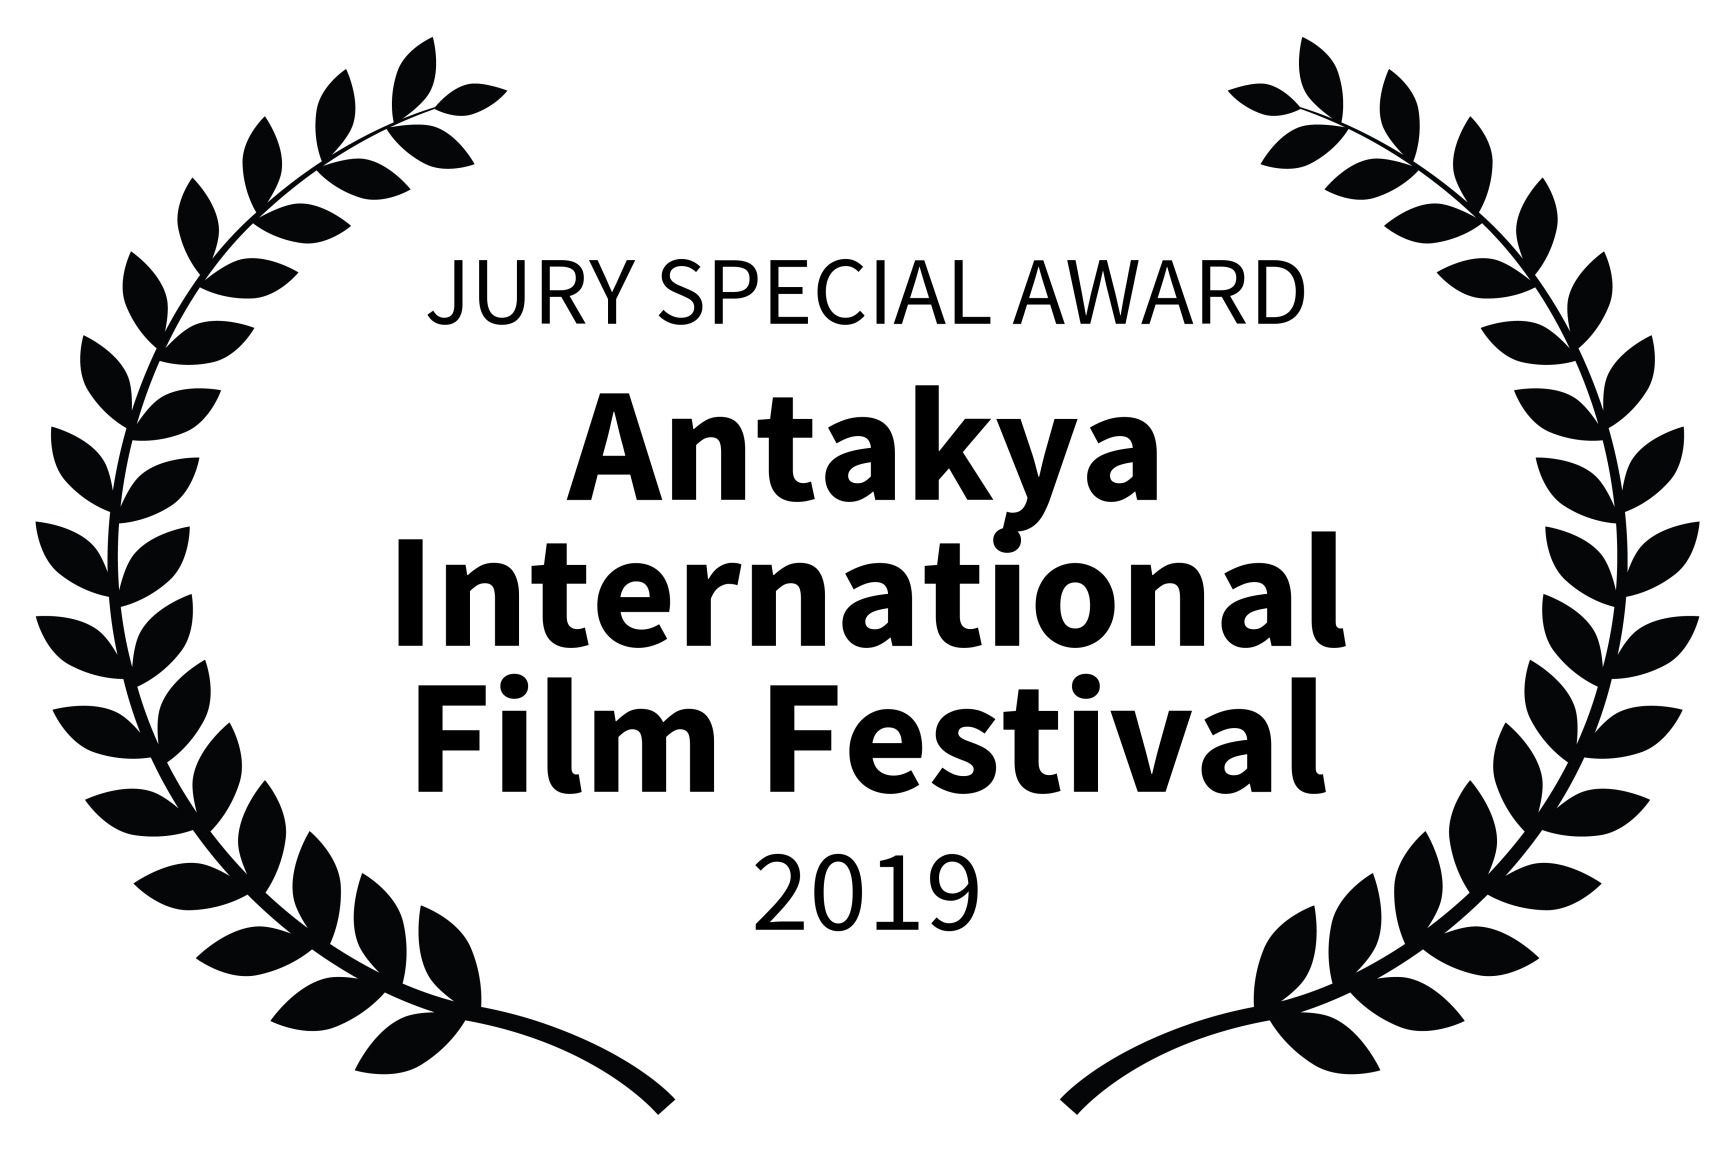 Antakya International Film Festival 2019